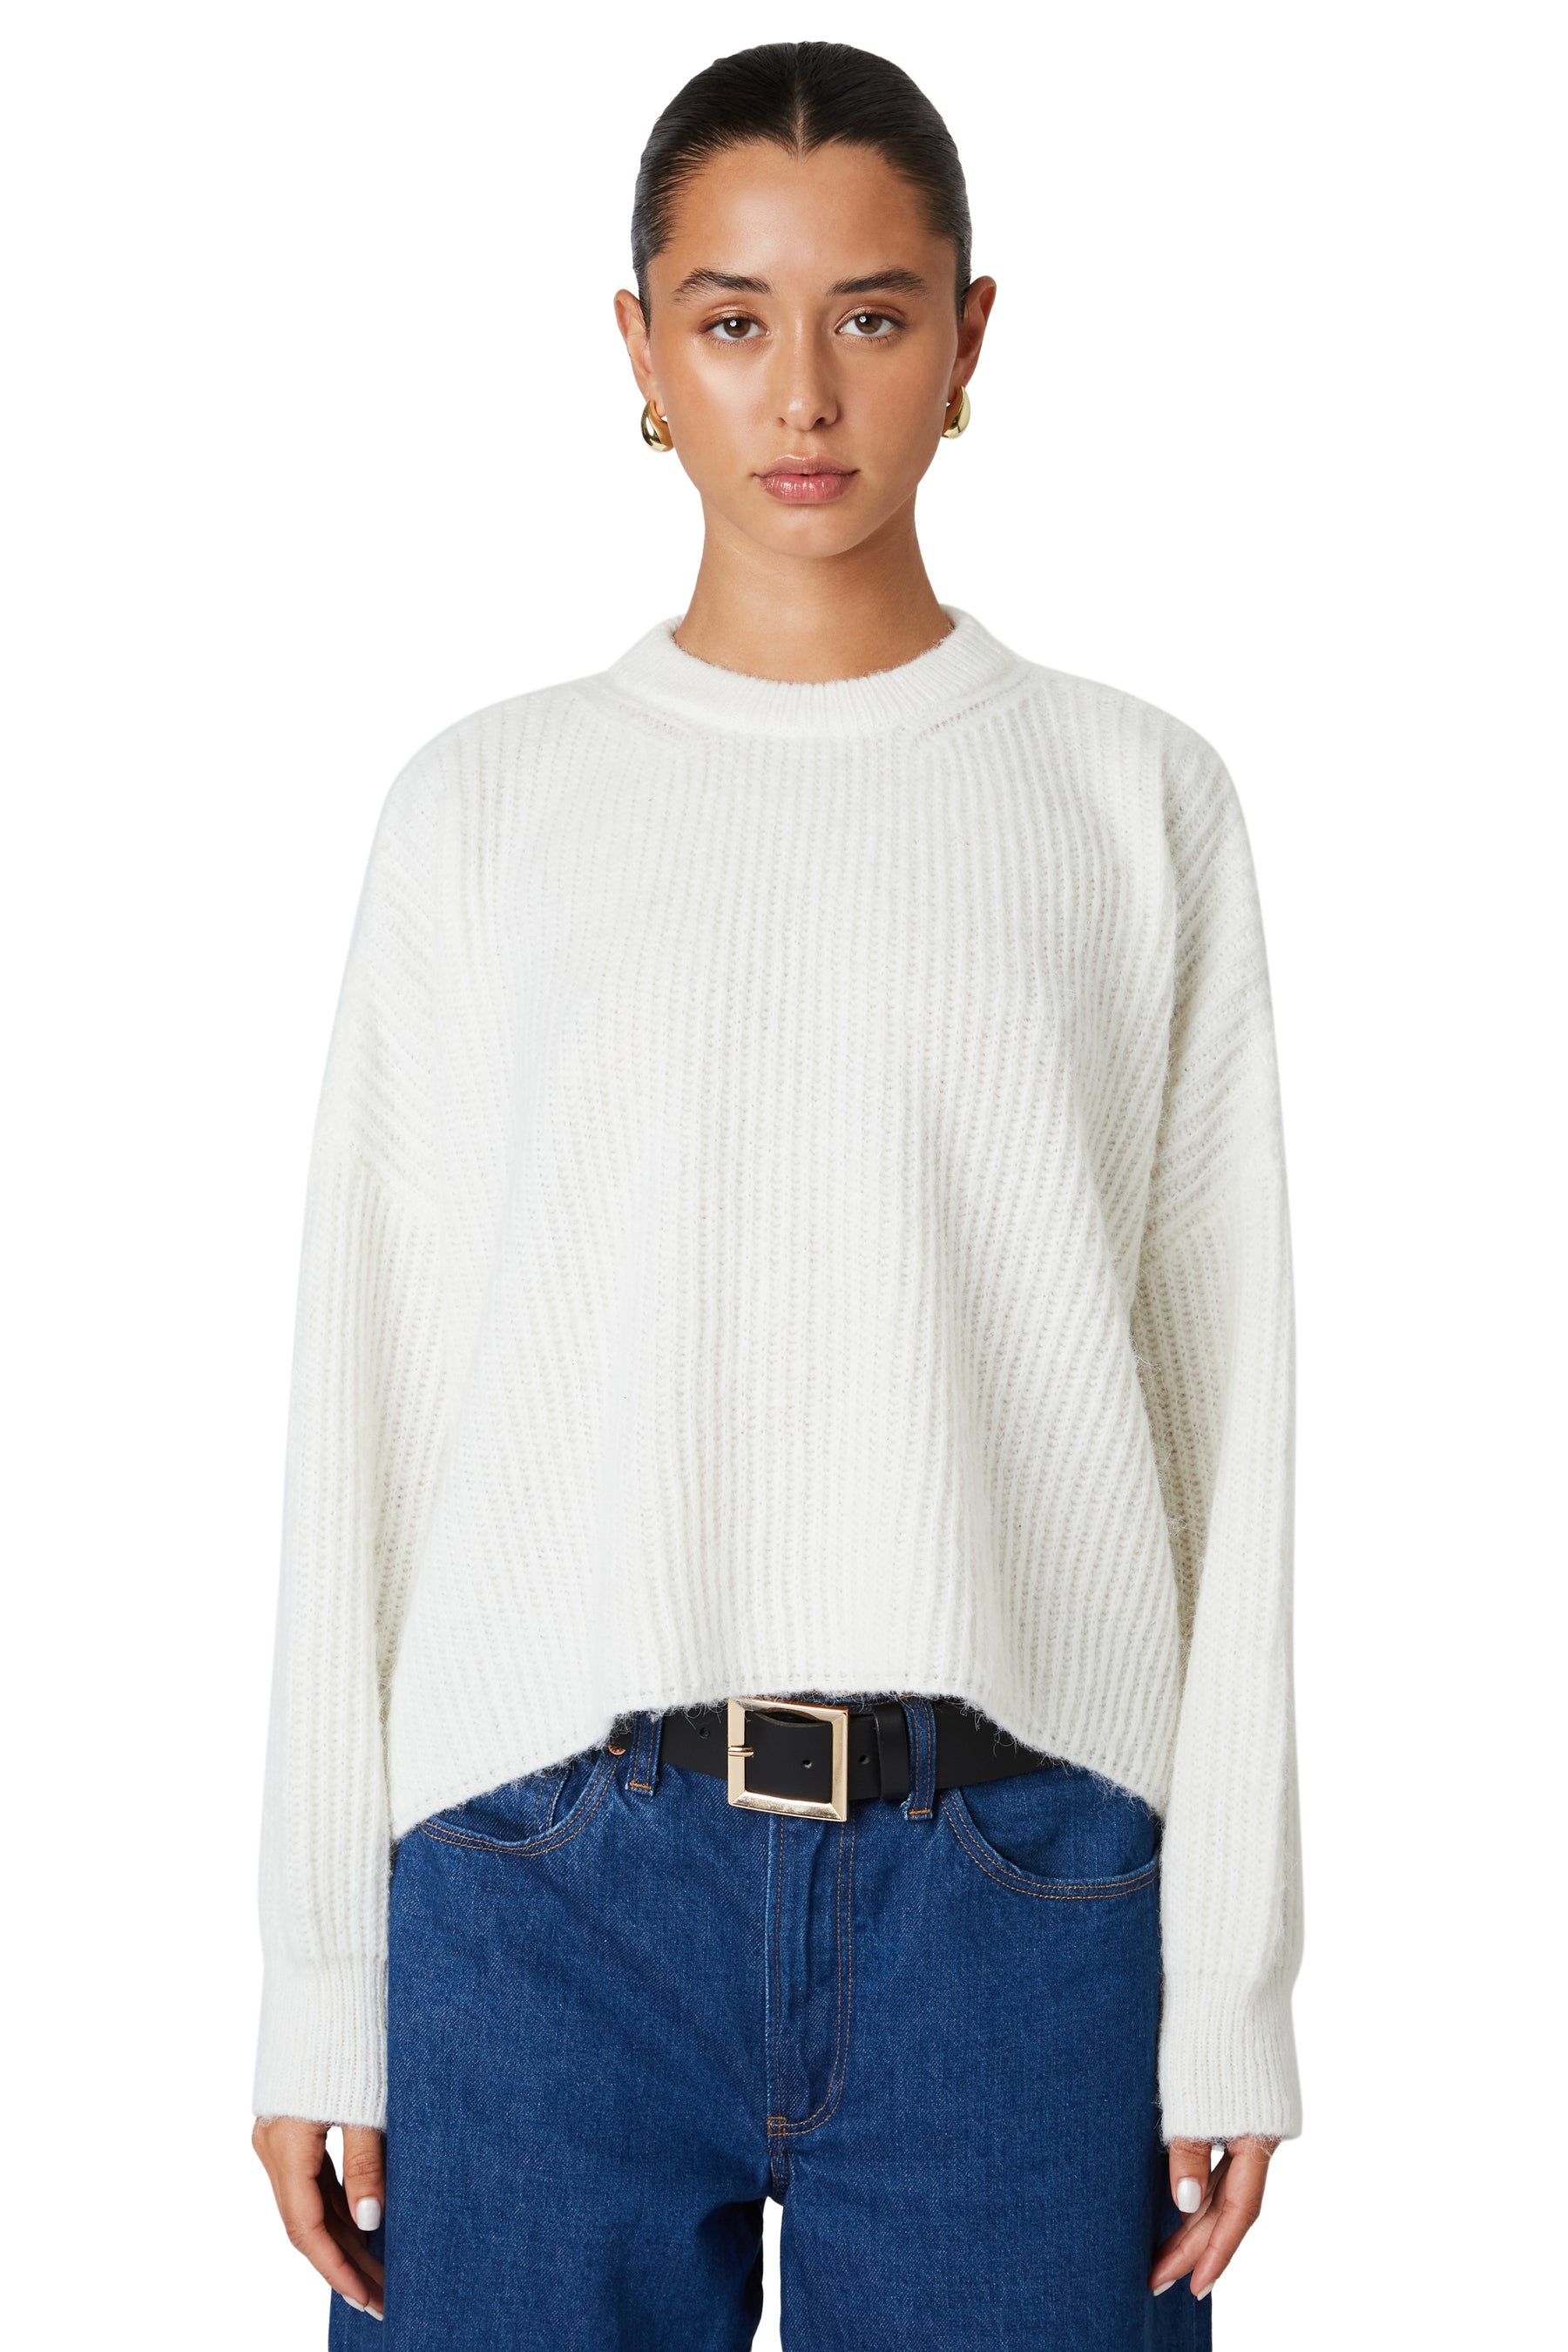 NIA Ariana Sweater White